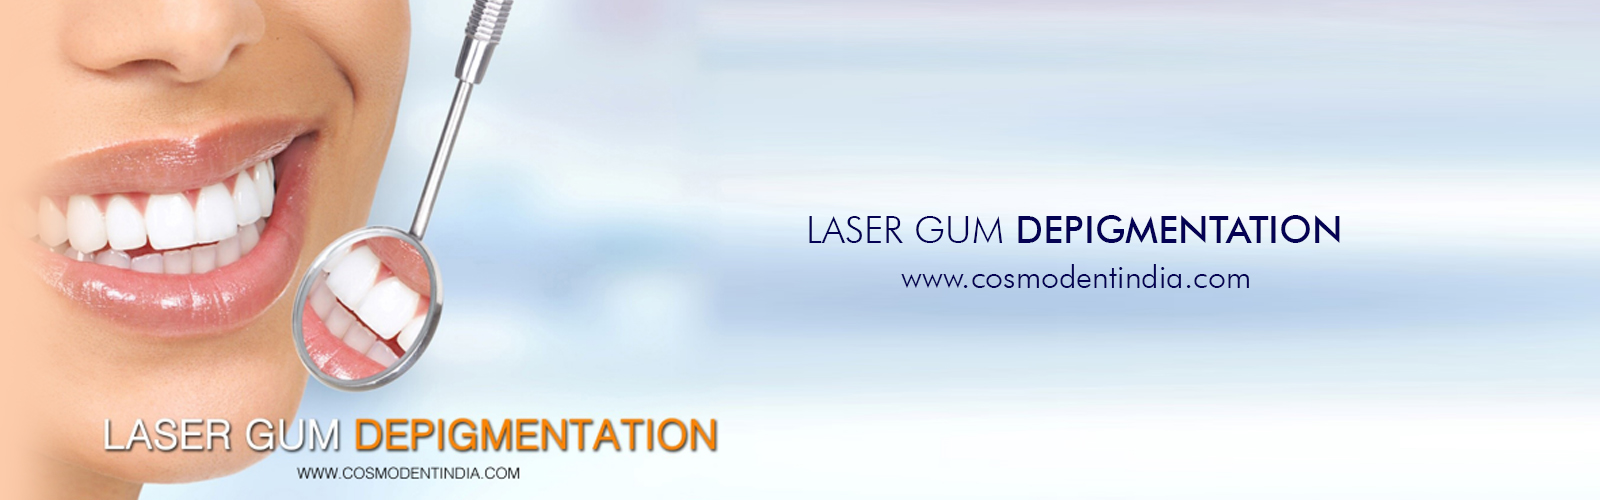 laser-gum-depigmentation